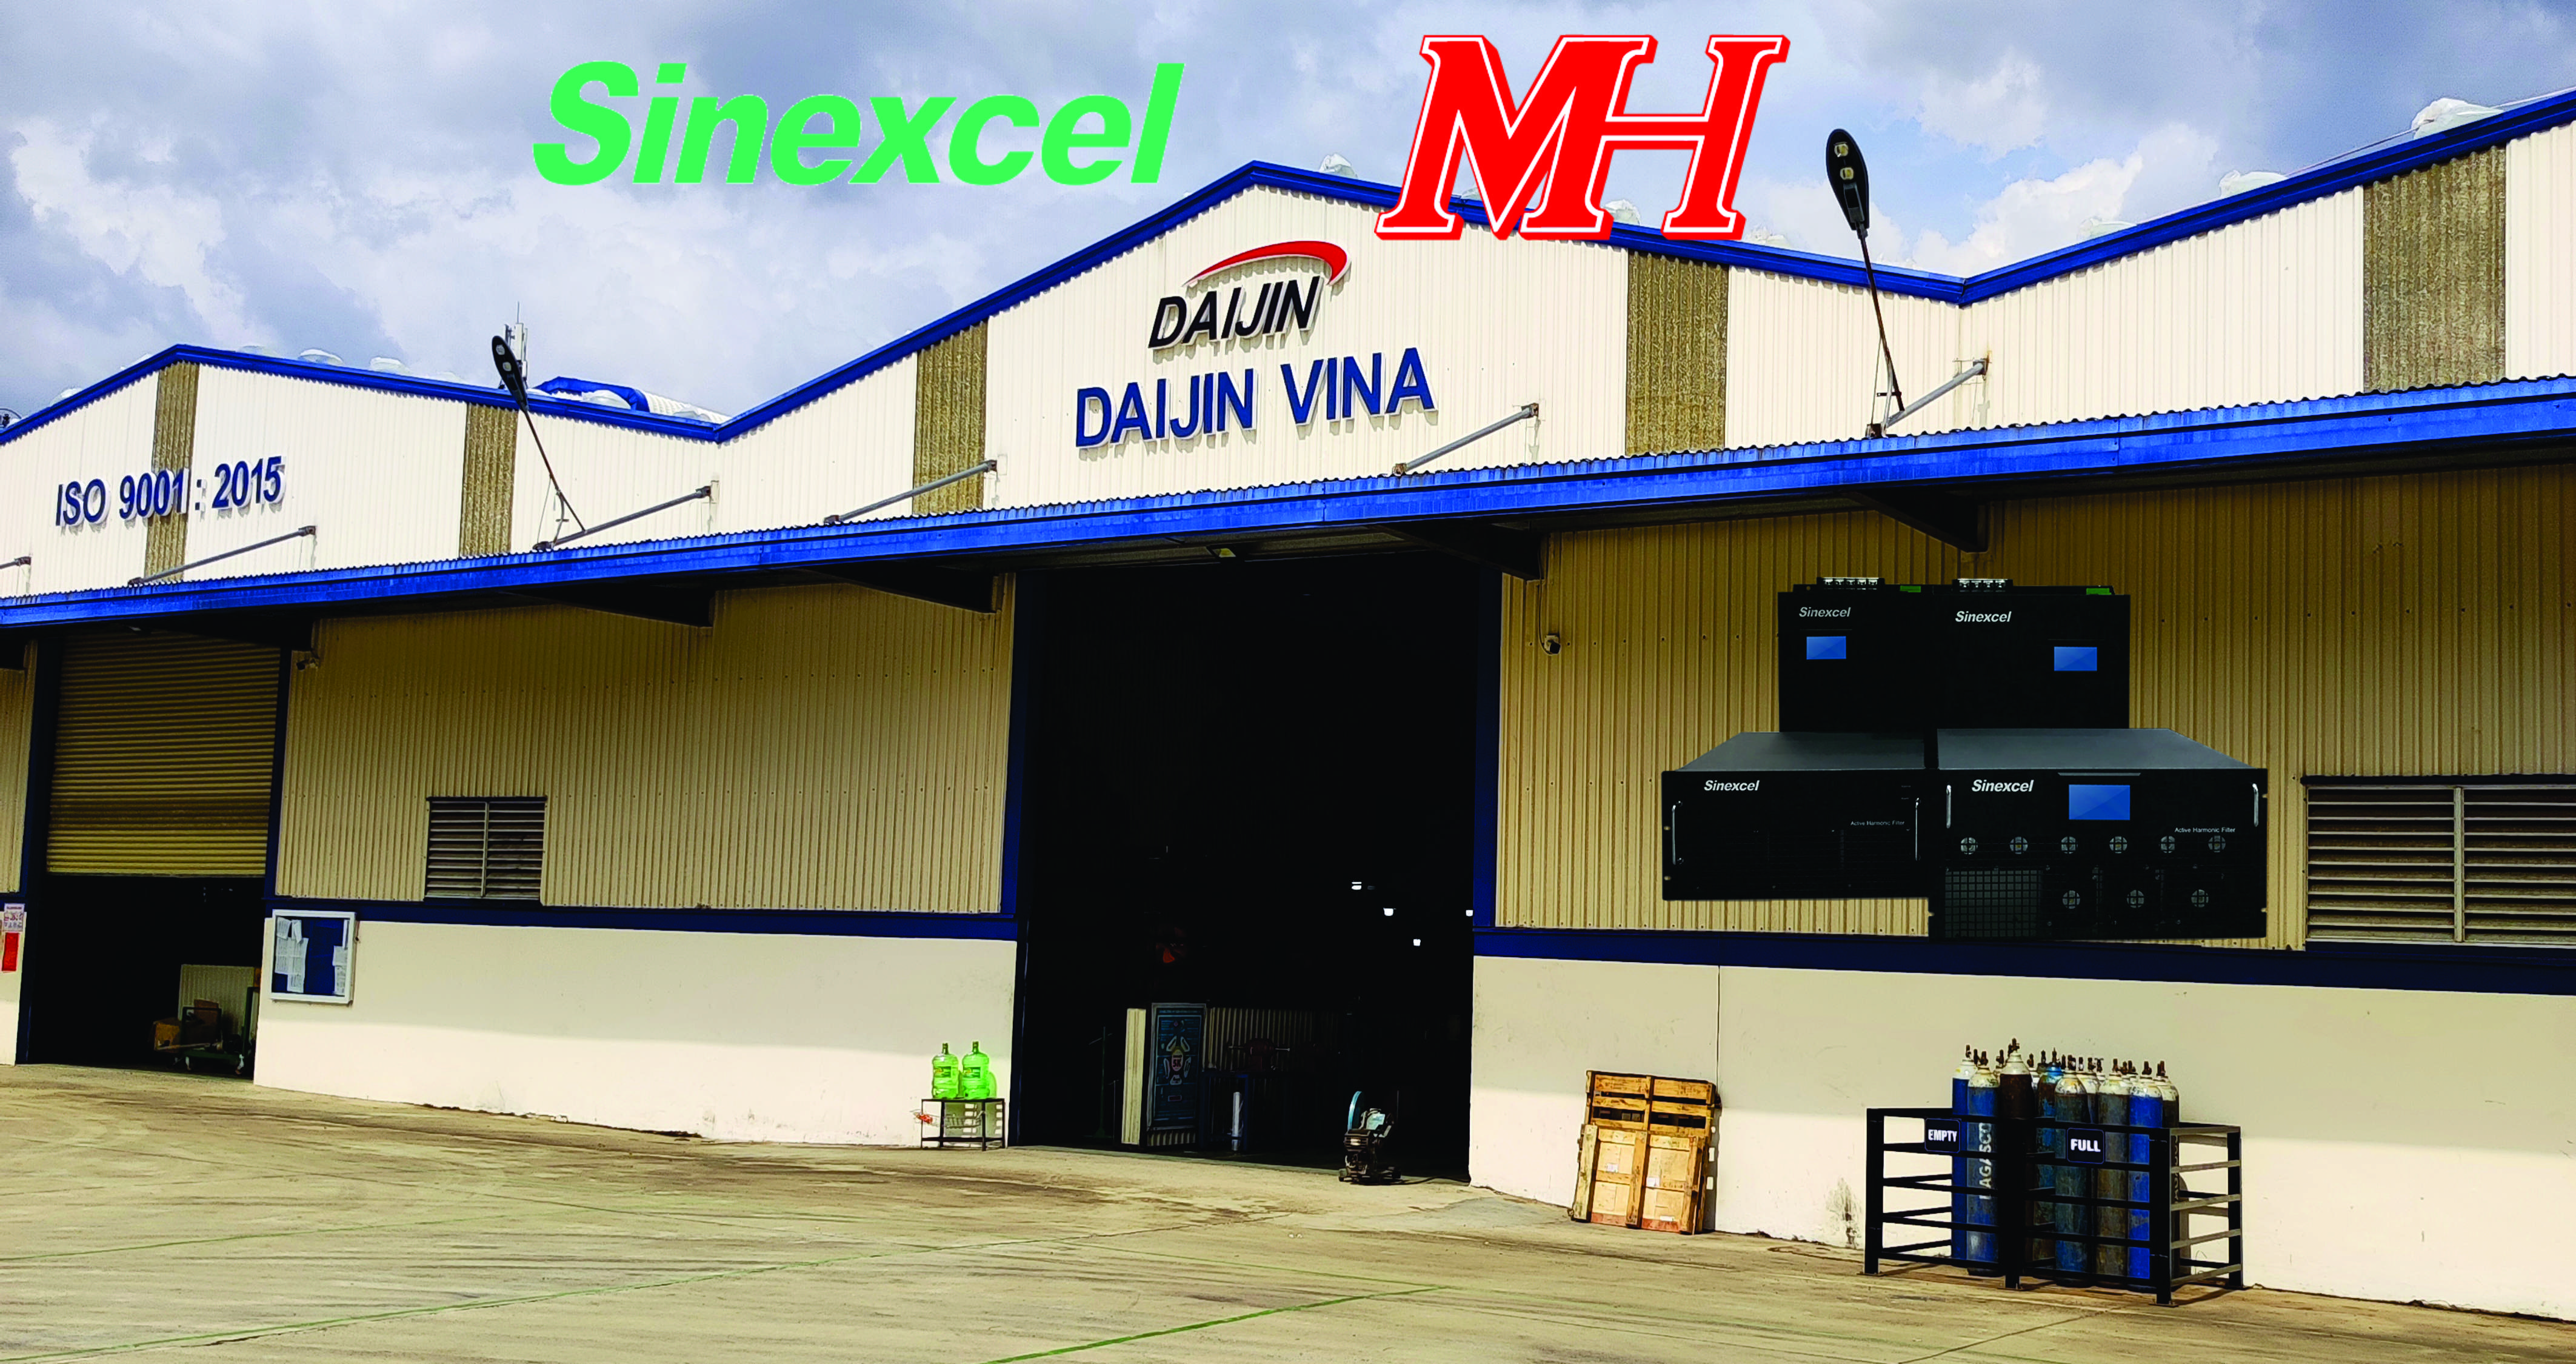 Dự án: Nhà máy Daijin Vina  - Lắp đặt hệ thống lọc sóng hài chủ động Sinexcel AHF